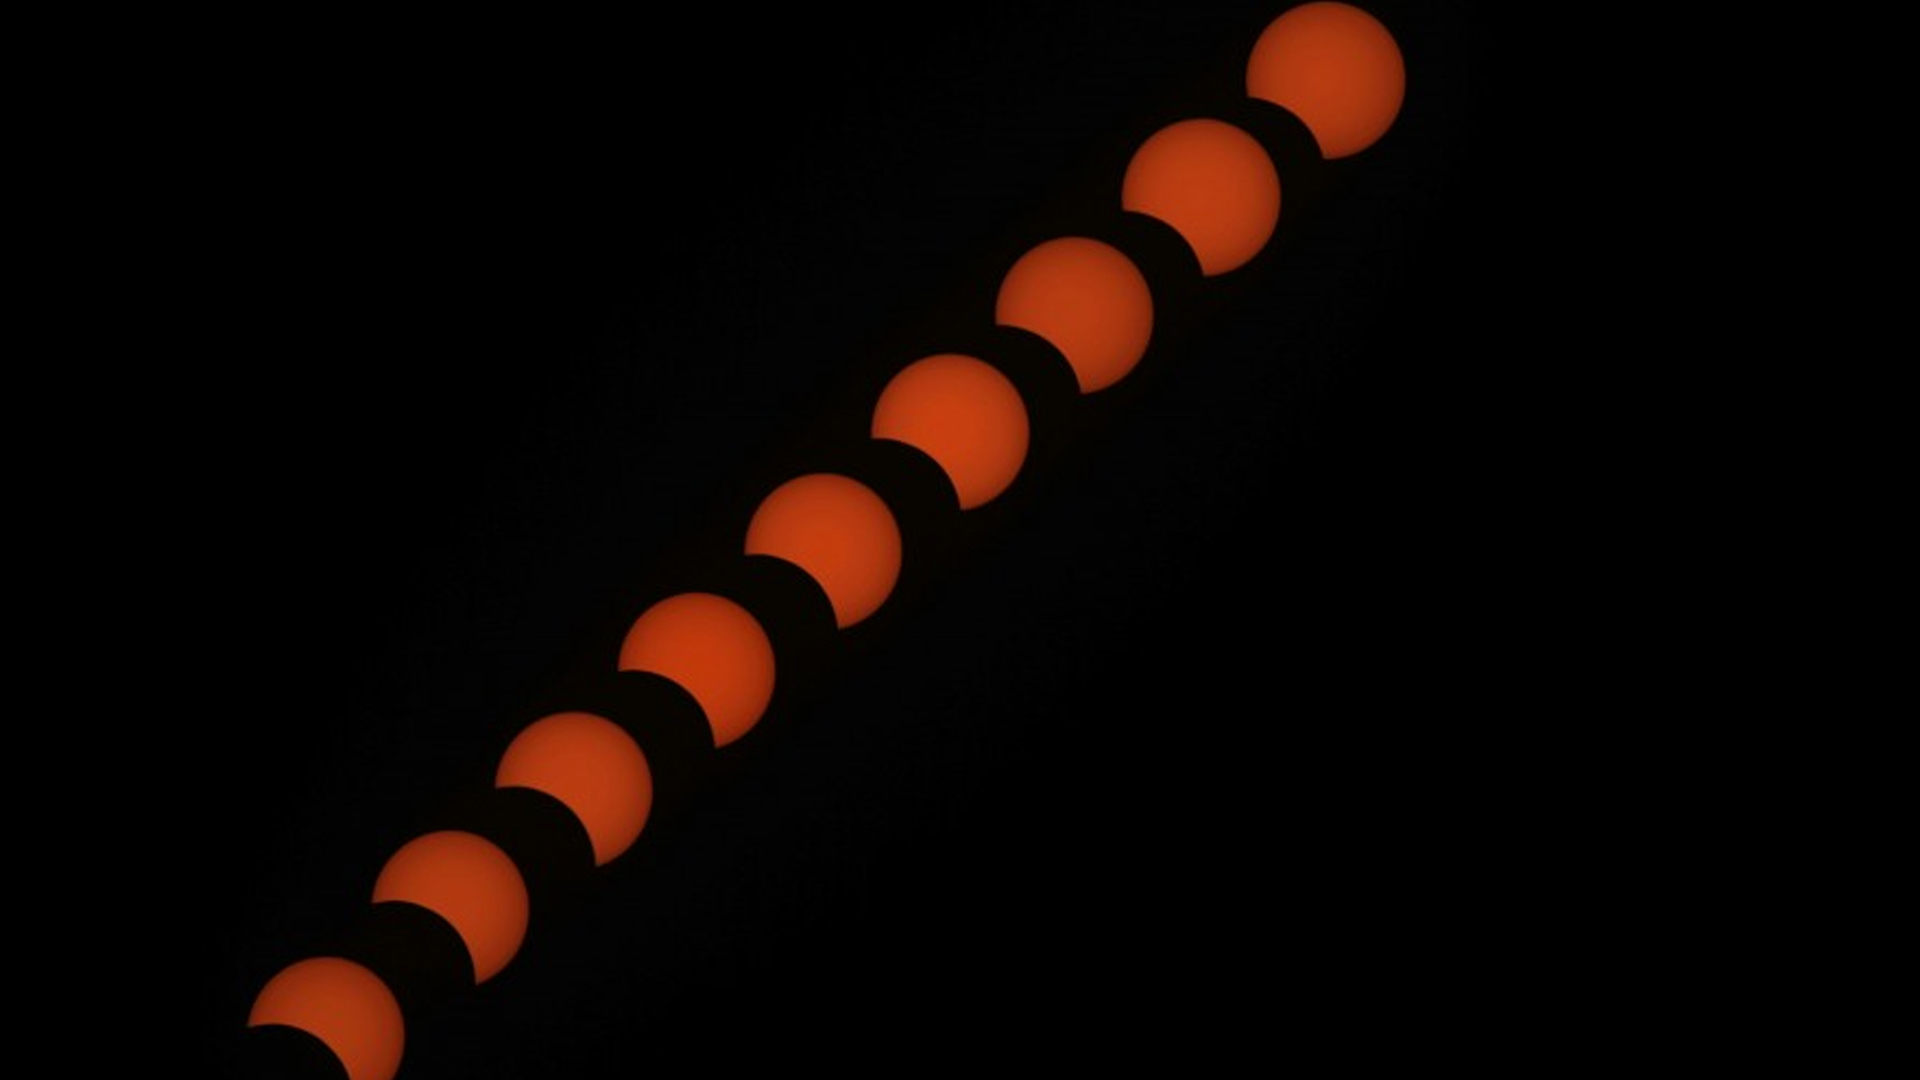 Los mitos relacionados con los eclipses solares